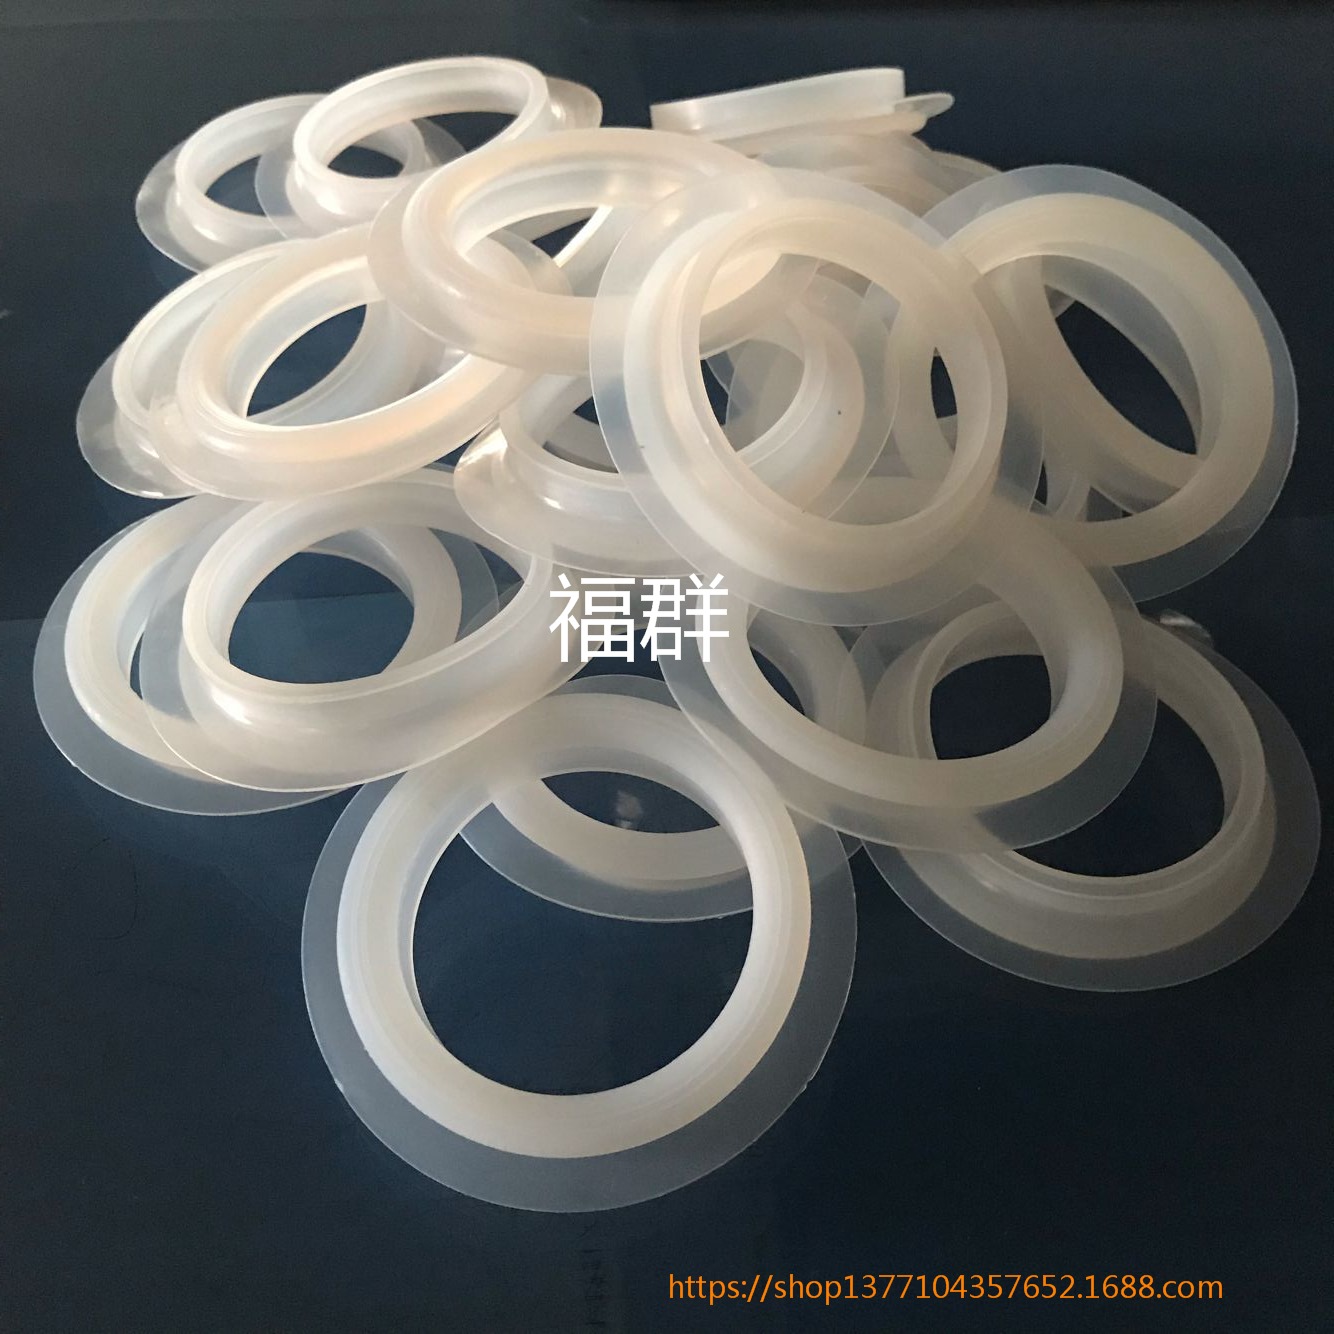 大量生产硅胶防水圈 硫化硅胶圈 三防灯专用硅胶垫 密封圈图片